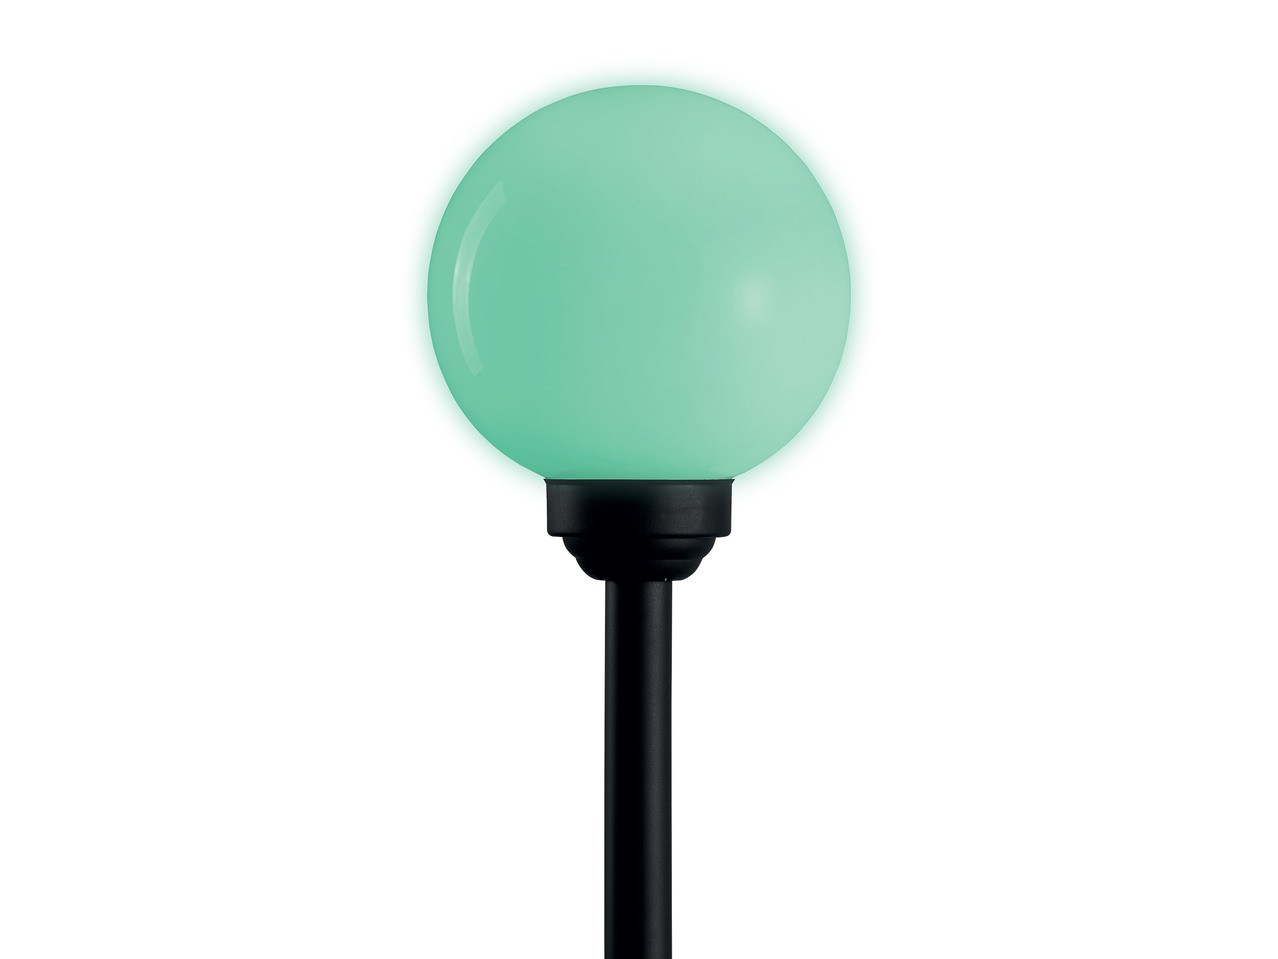 20cm Solar-Powered LED Light Ball